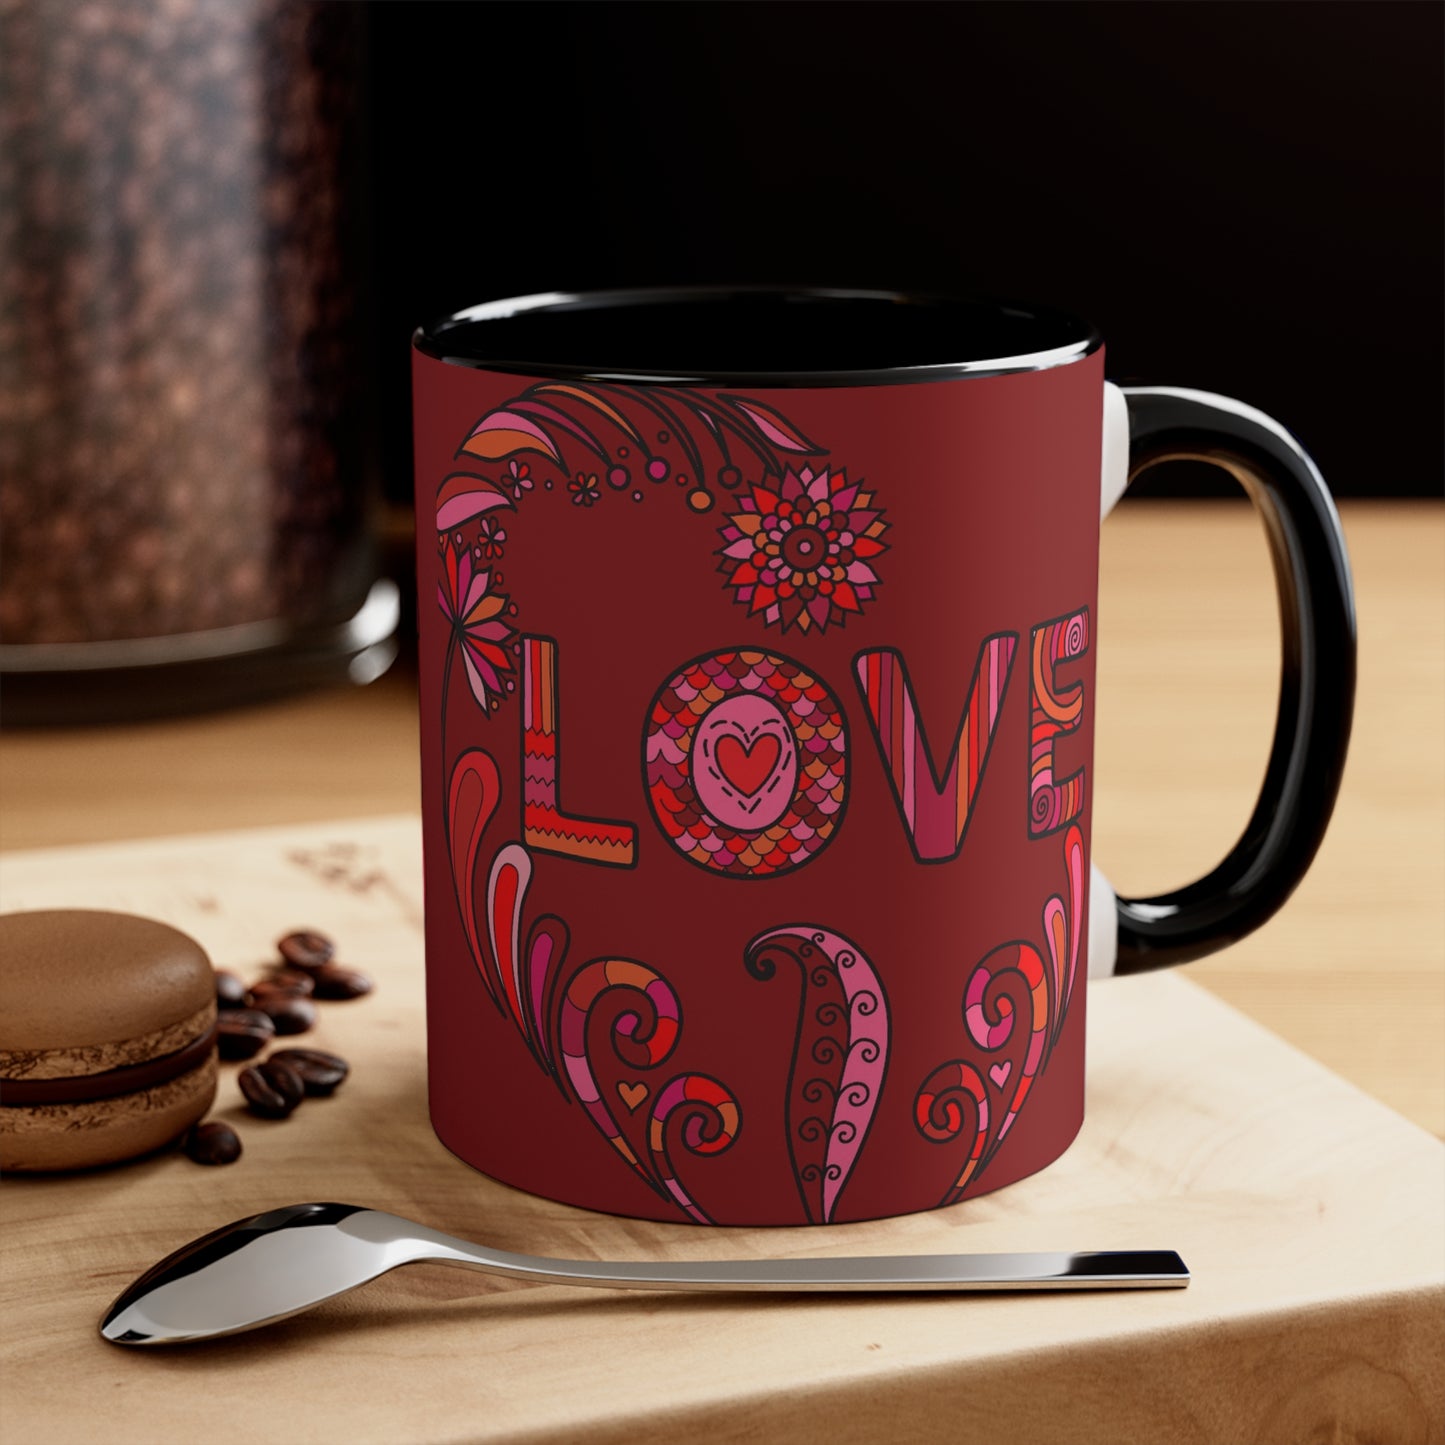 Accent Two Tone Coffee Mug, 11oz - Boho Love Mug black